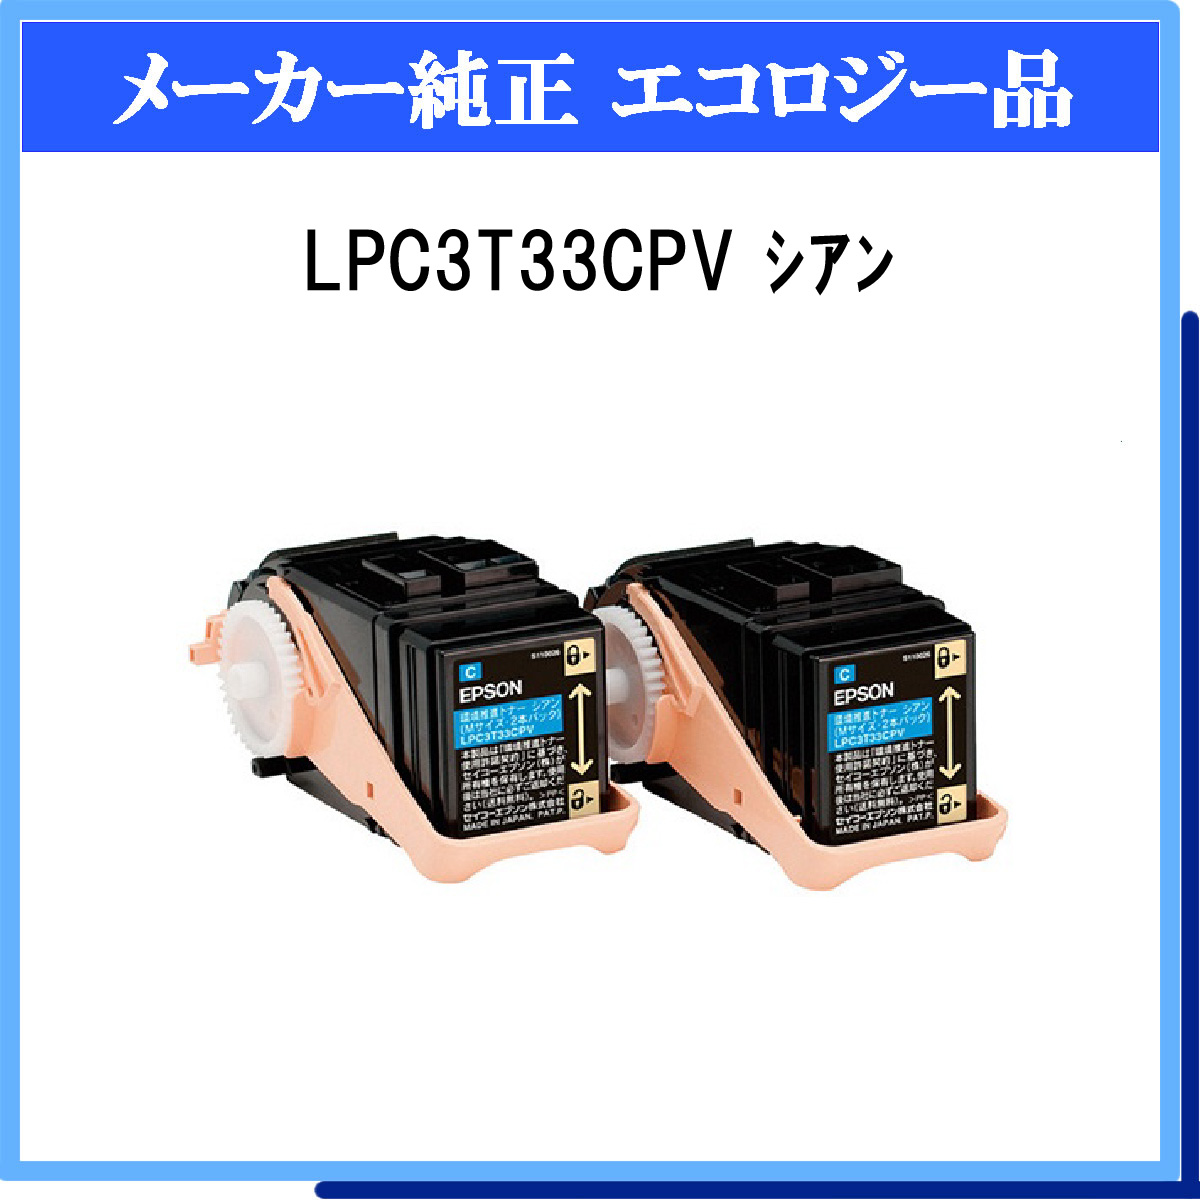 LPC3T33CPV (2P) 環境推進ﾄﾅｰ